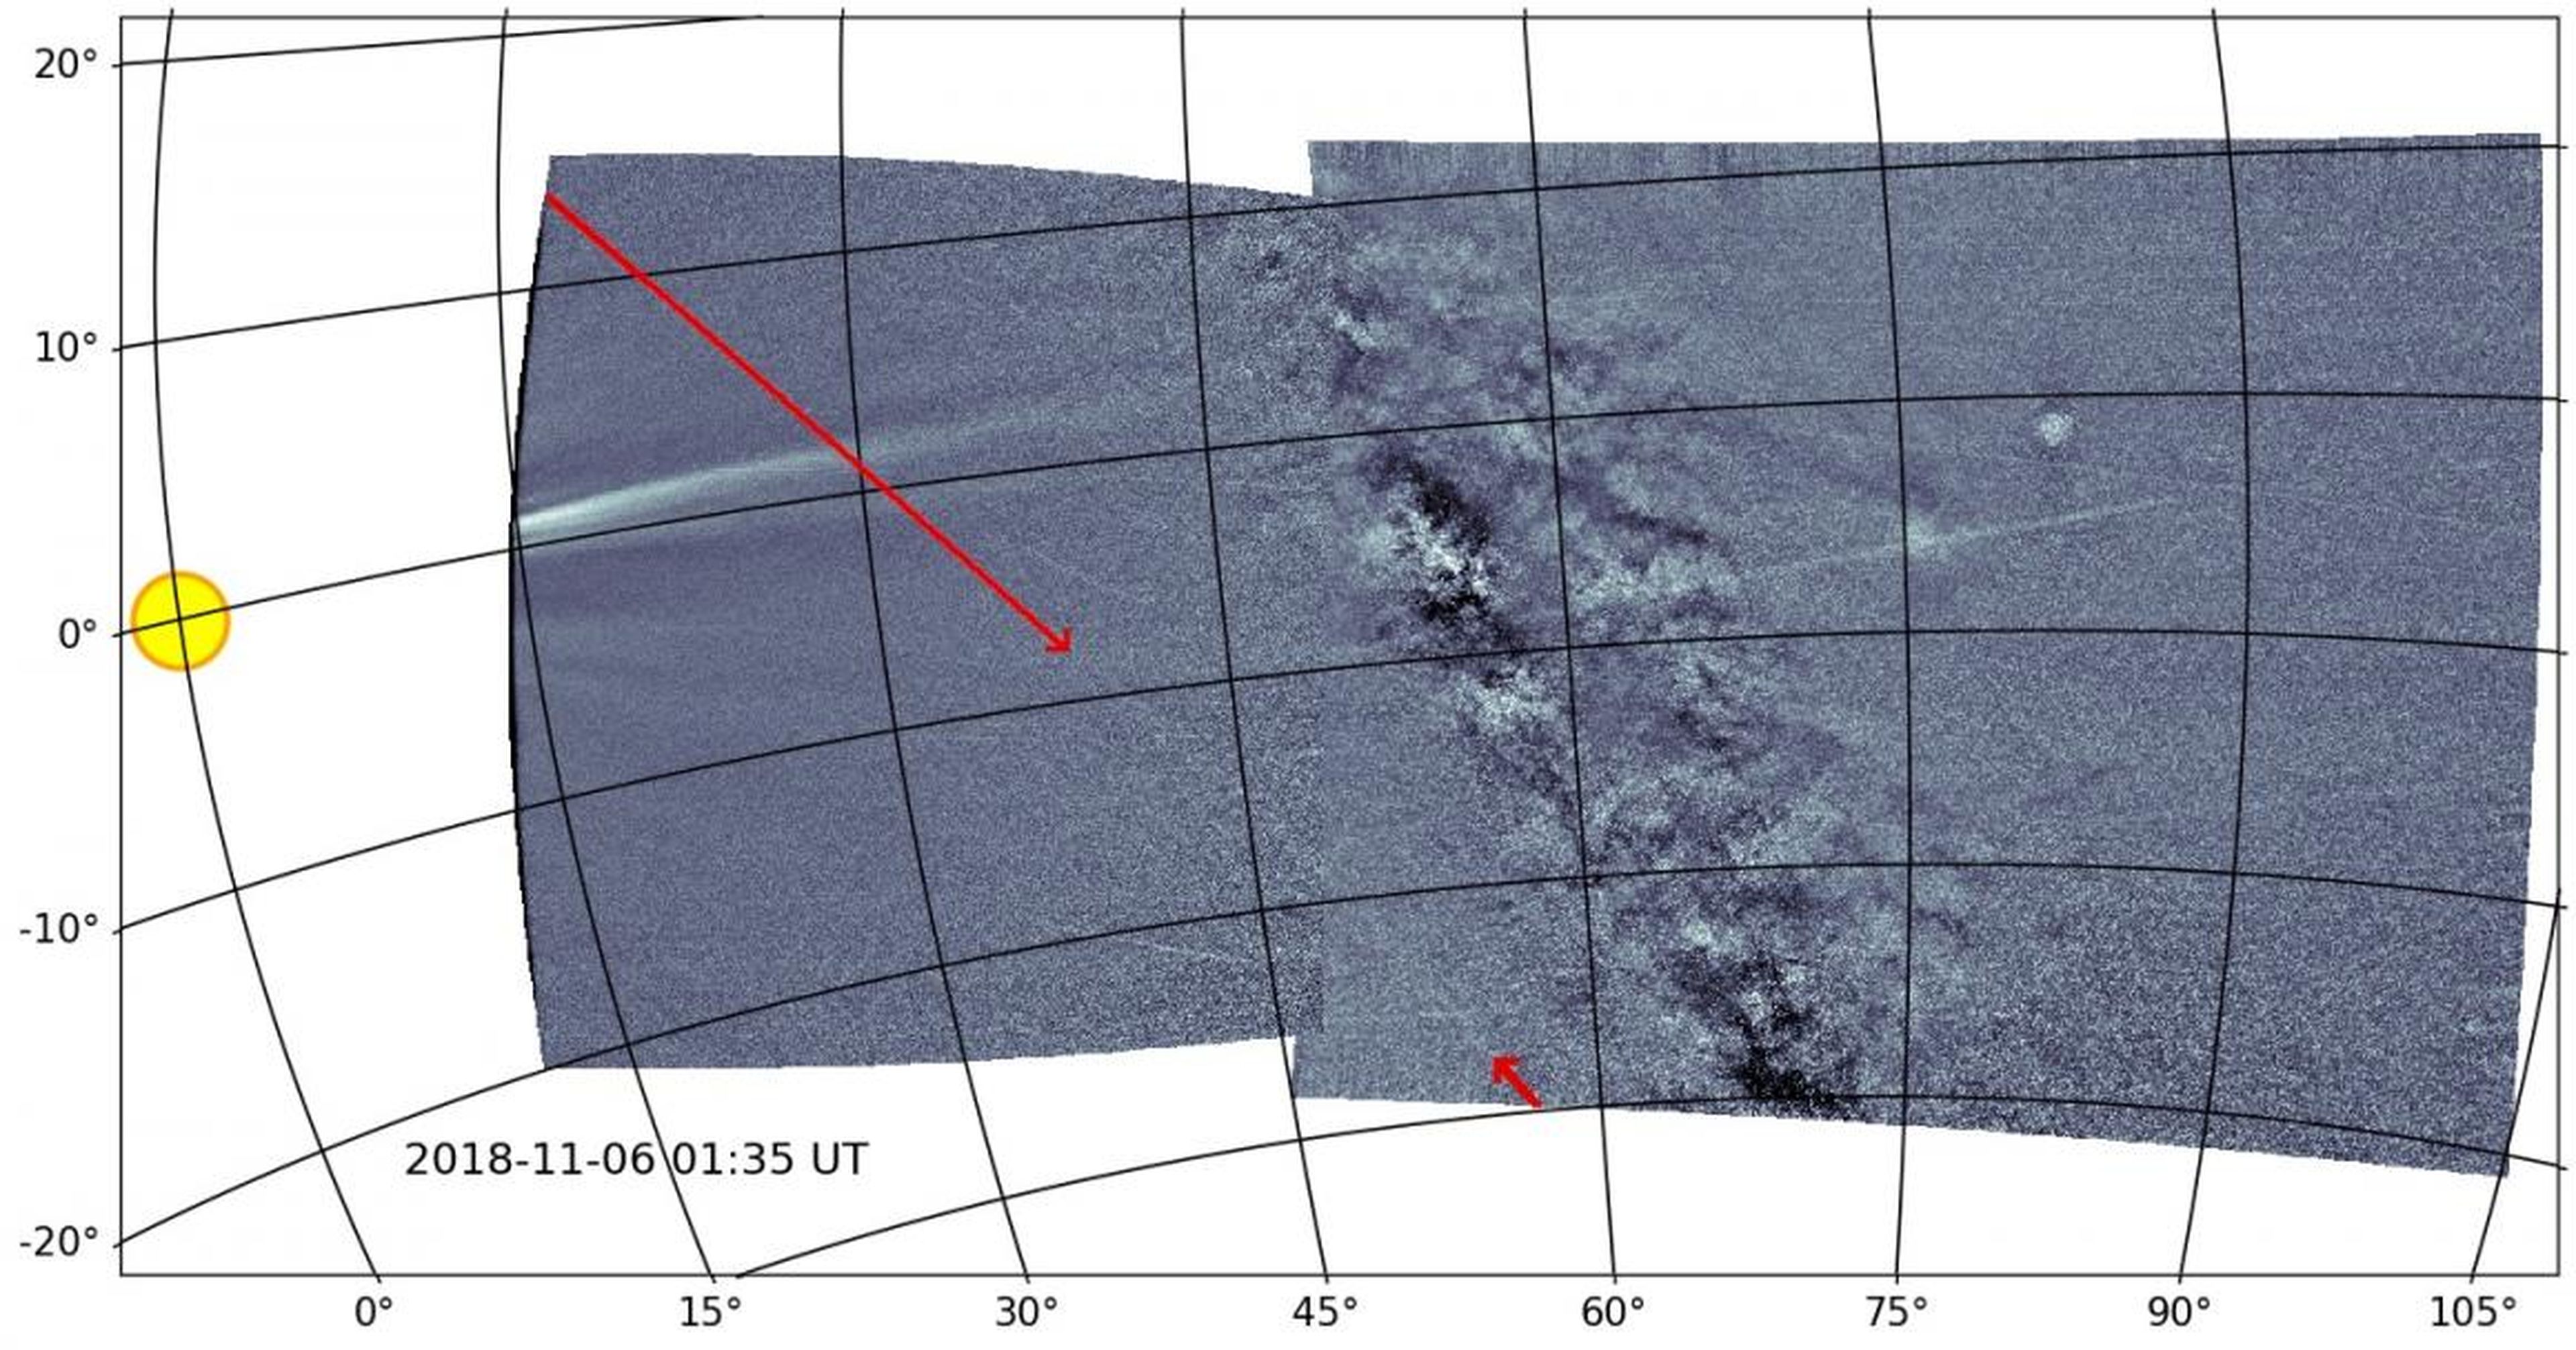 La sonda Parker capturó el rastro de las Gemínidas por primera vez (señalado por las flechas rojas).